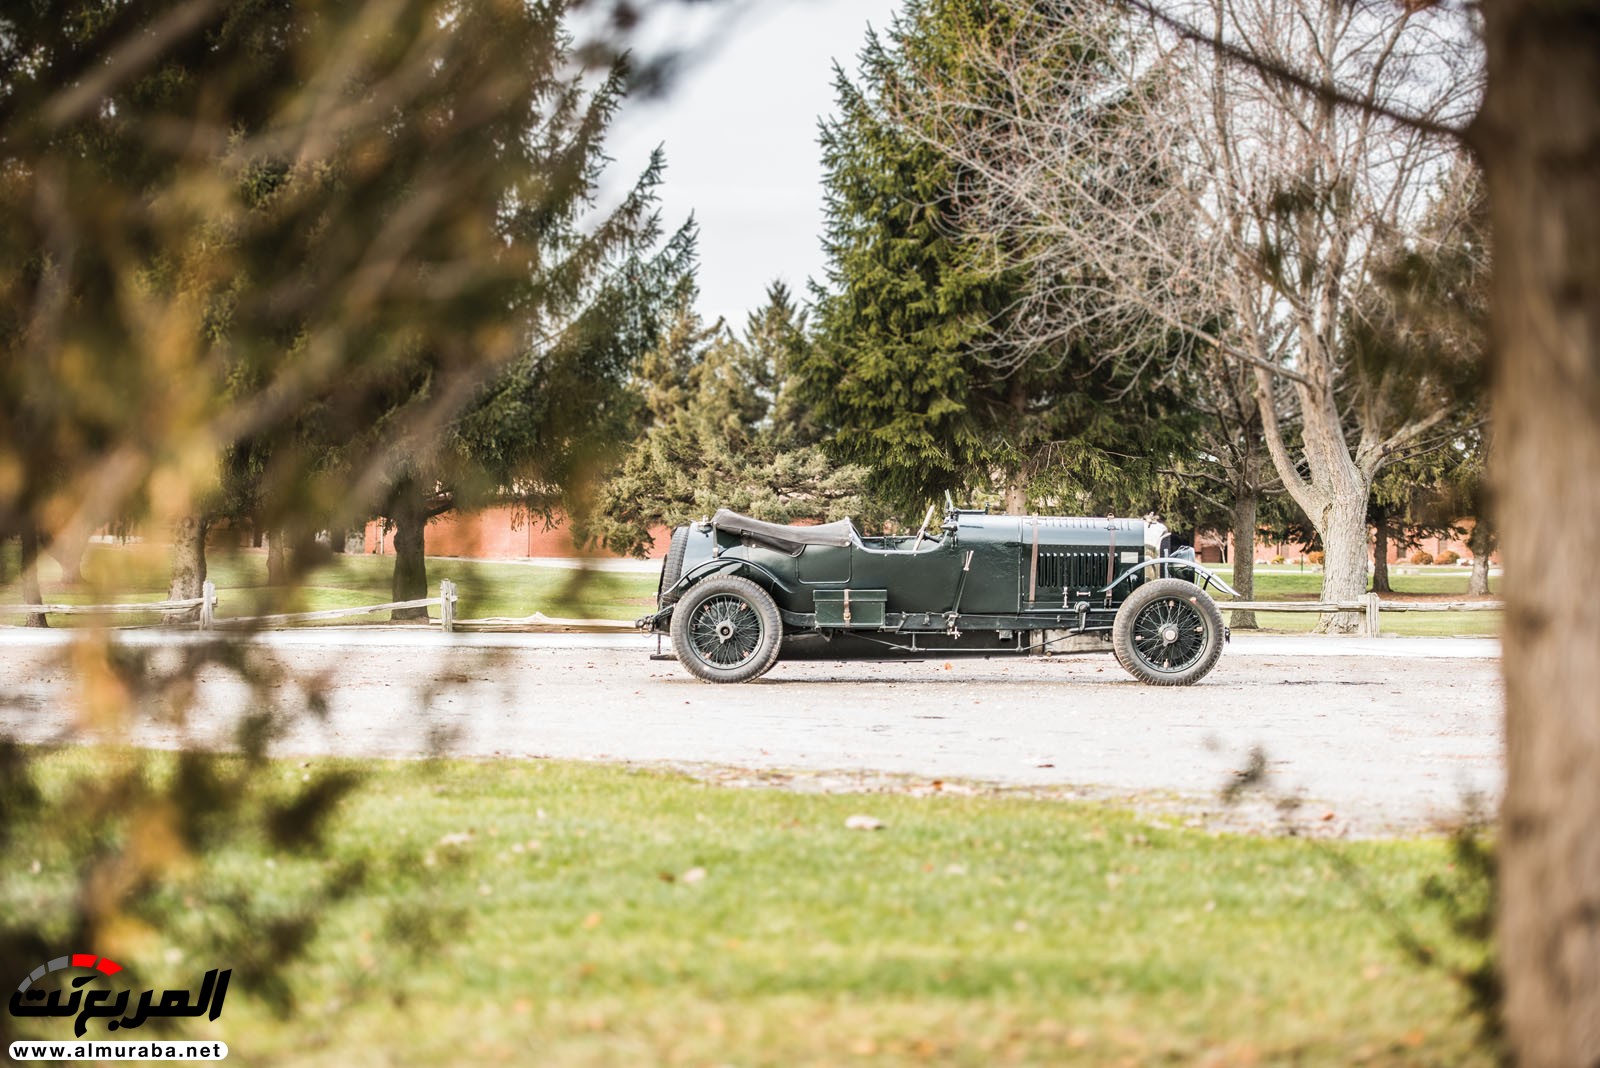 "بالصور" سيارة بنتلي موديل 1928 المشاركة في سباقات لومان تعرض بـ 7 مليون دولار في مزاد علني 125